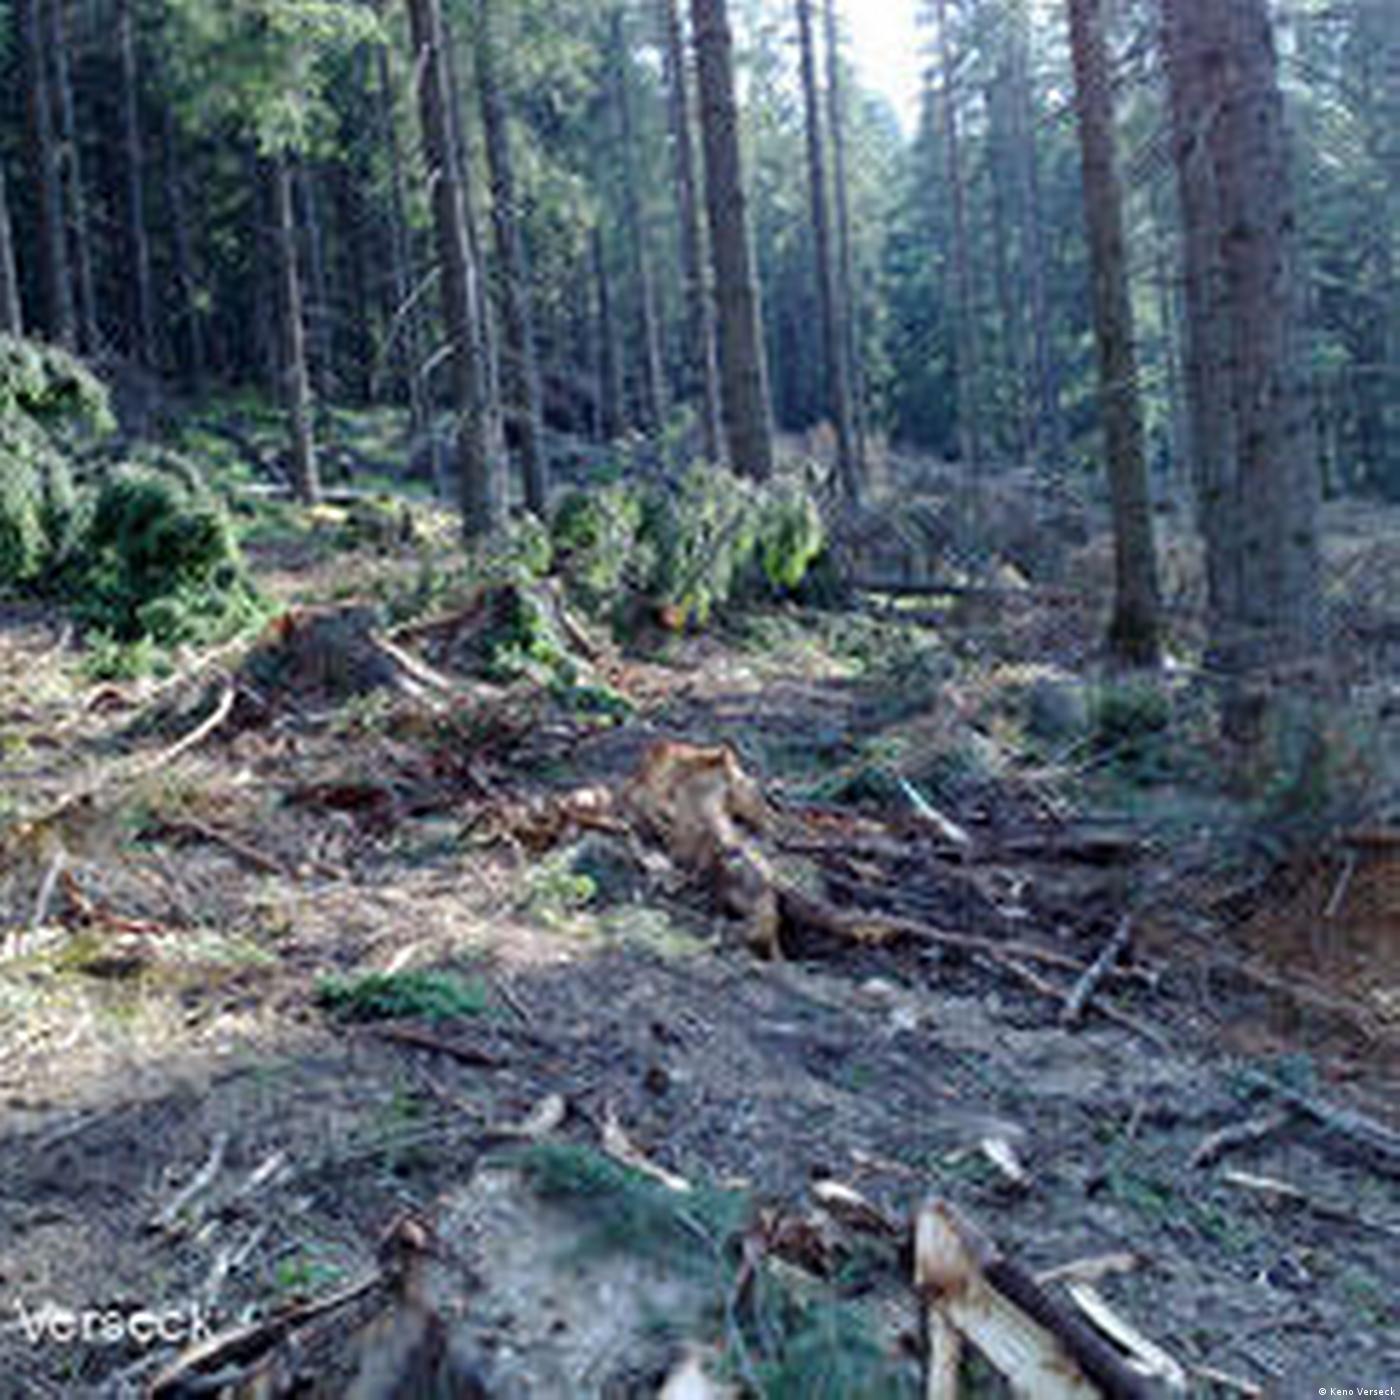 Romania: Illegal logging in Carpathia